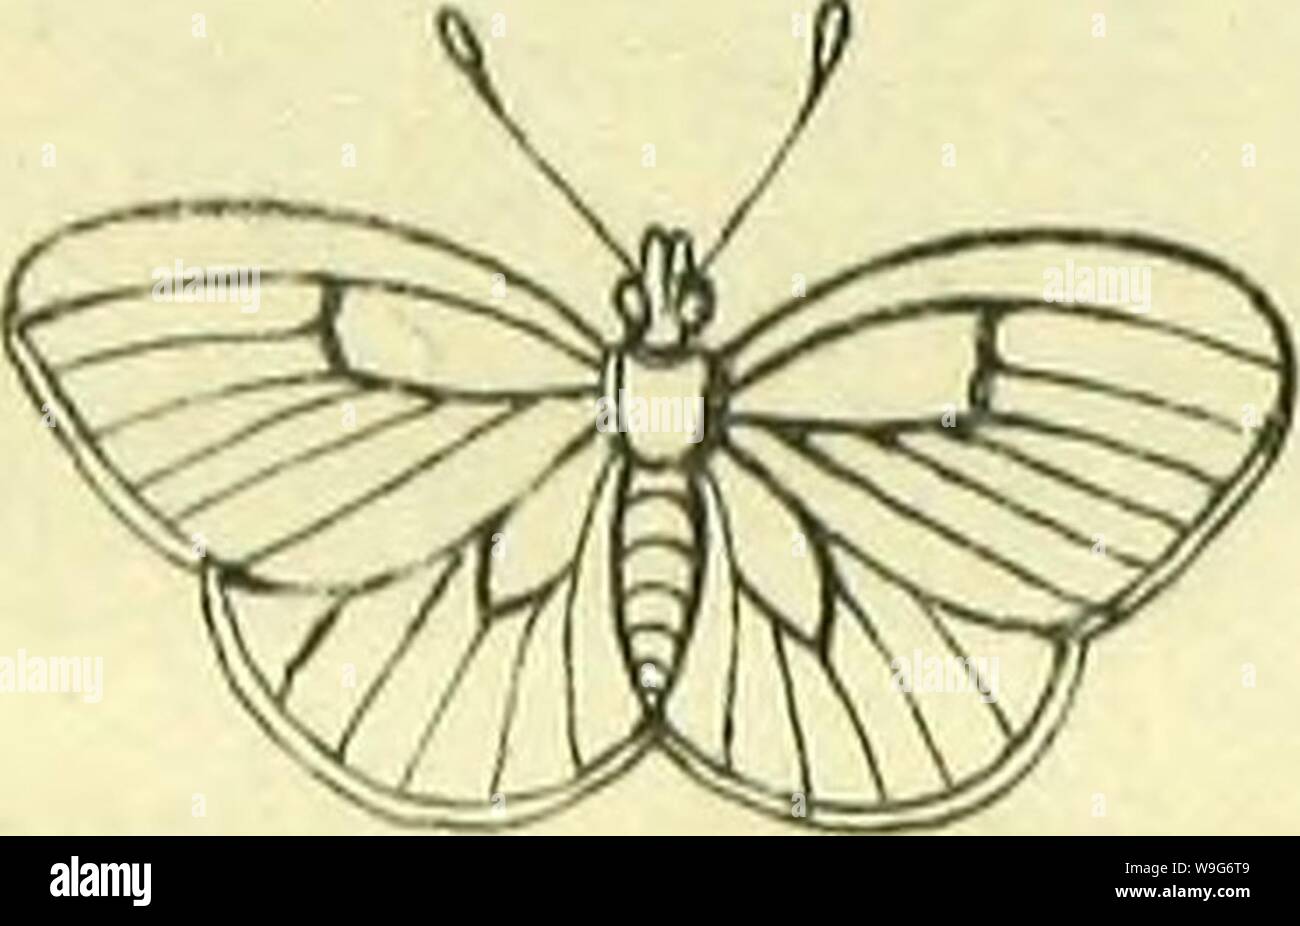 Immagine di archivio da pagina 125 di Manuel entomologique pour la classificazione. Manuel entomologique pour la classificazione des Lépidoptères de France, d'apreés les méthodes et nomenclatures de MM. Latreille, Godart, Hubner et les entomologistes le plus suivis CUbiodiversity1126821 Anno: 1822 ( ltaïï&GT;aa)IPWa!Eaa Dîmes. Genere 2'' oeclnm ( J &gt;'t£un't?7?J??2&lt;Z& y fr/y/. Foto Stock